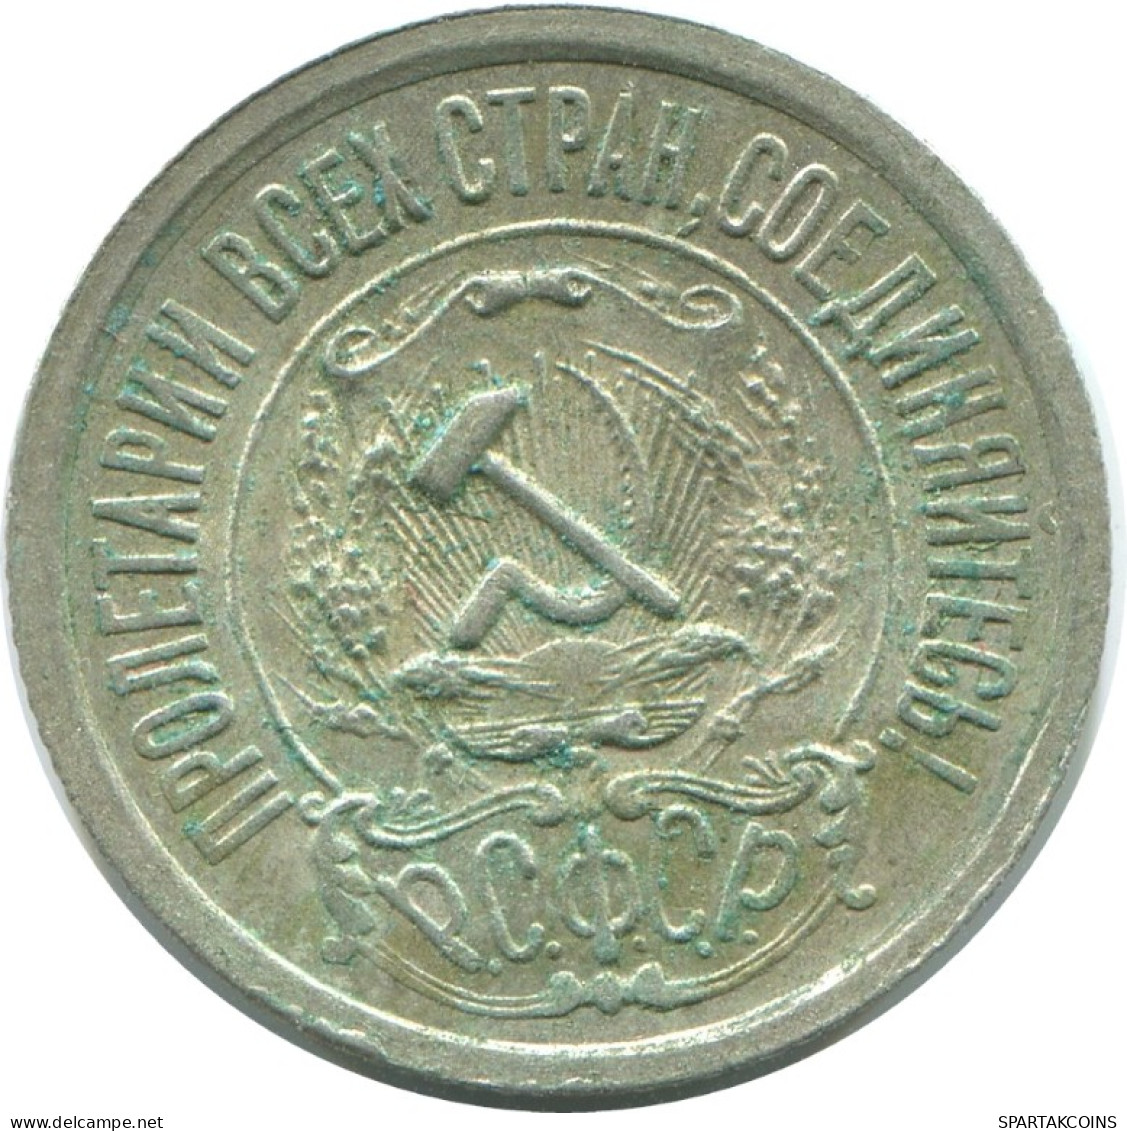 15 KOPEKS 1922 RUSIA RUSSIA RSFSR PLATA Moneda HIGH GRADE #AF192.4.E.A - Russland